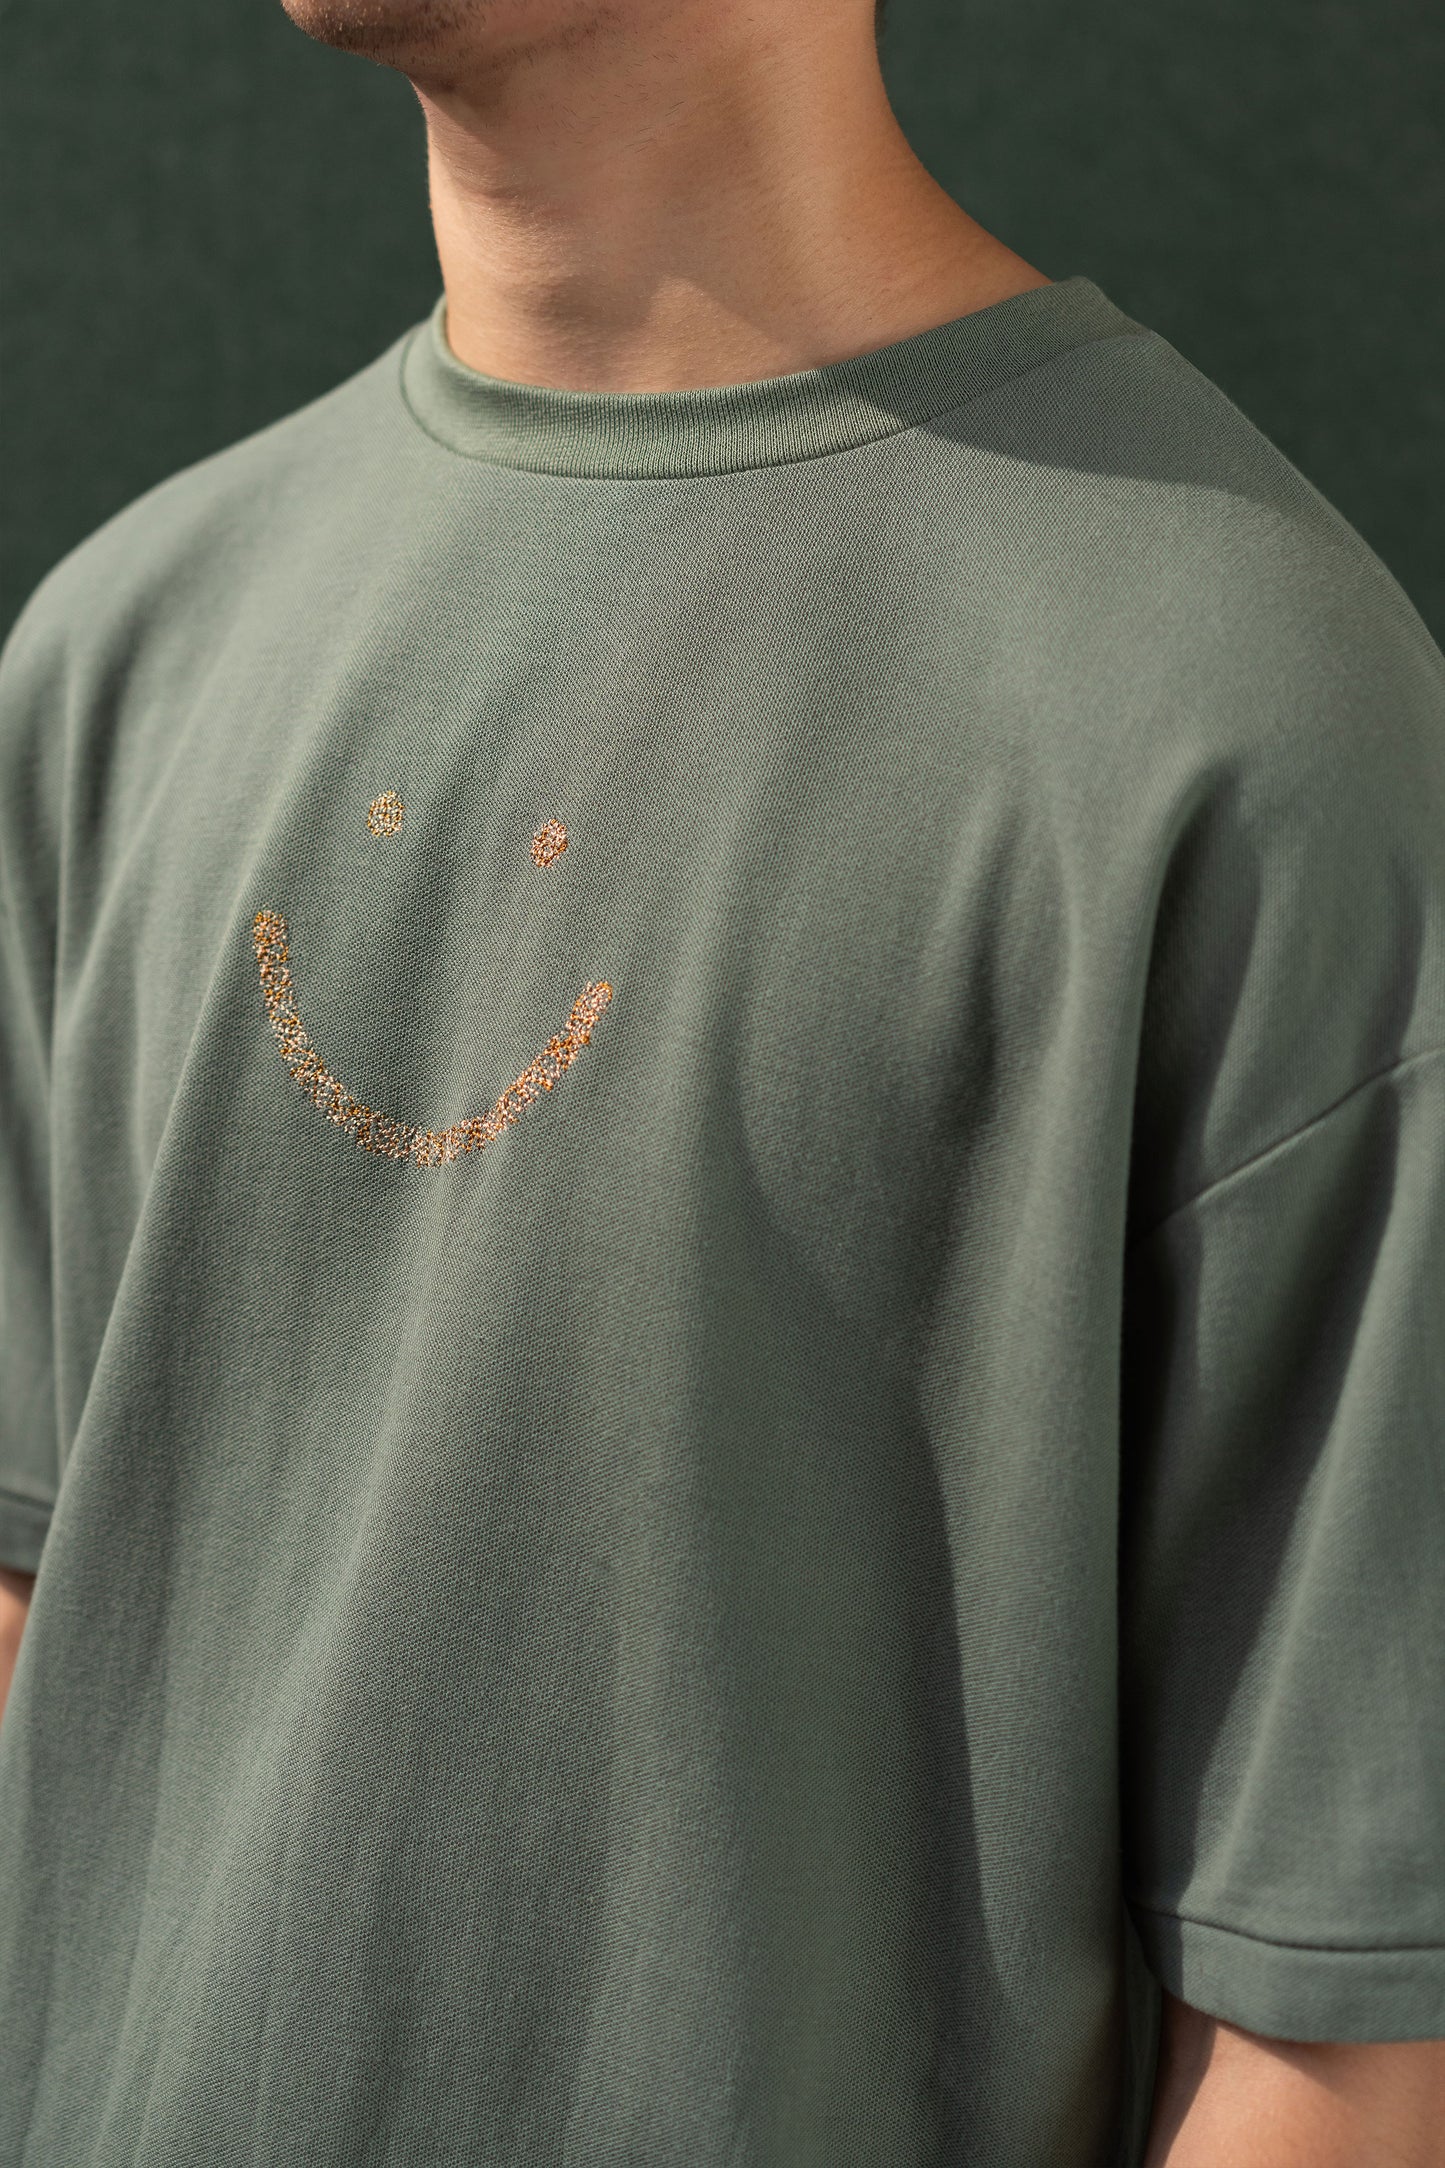 Pique T-Shirt Palm Triple Stitch Smiley